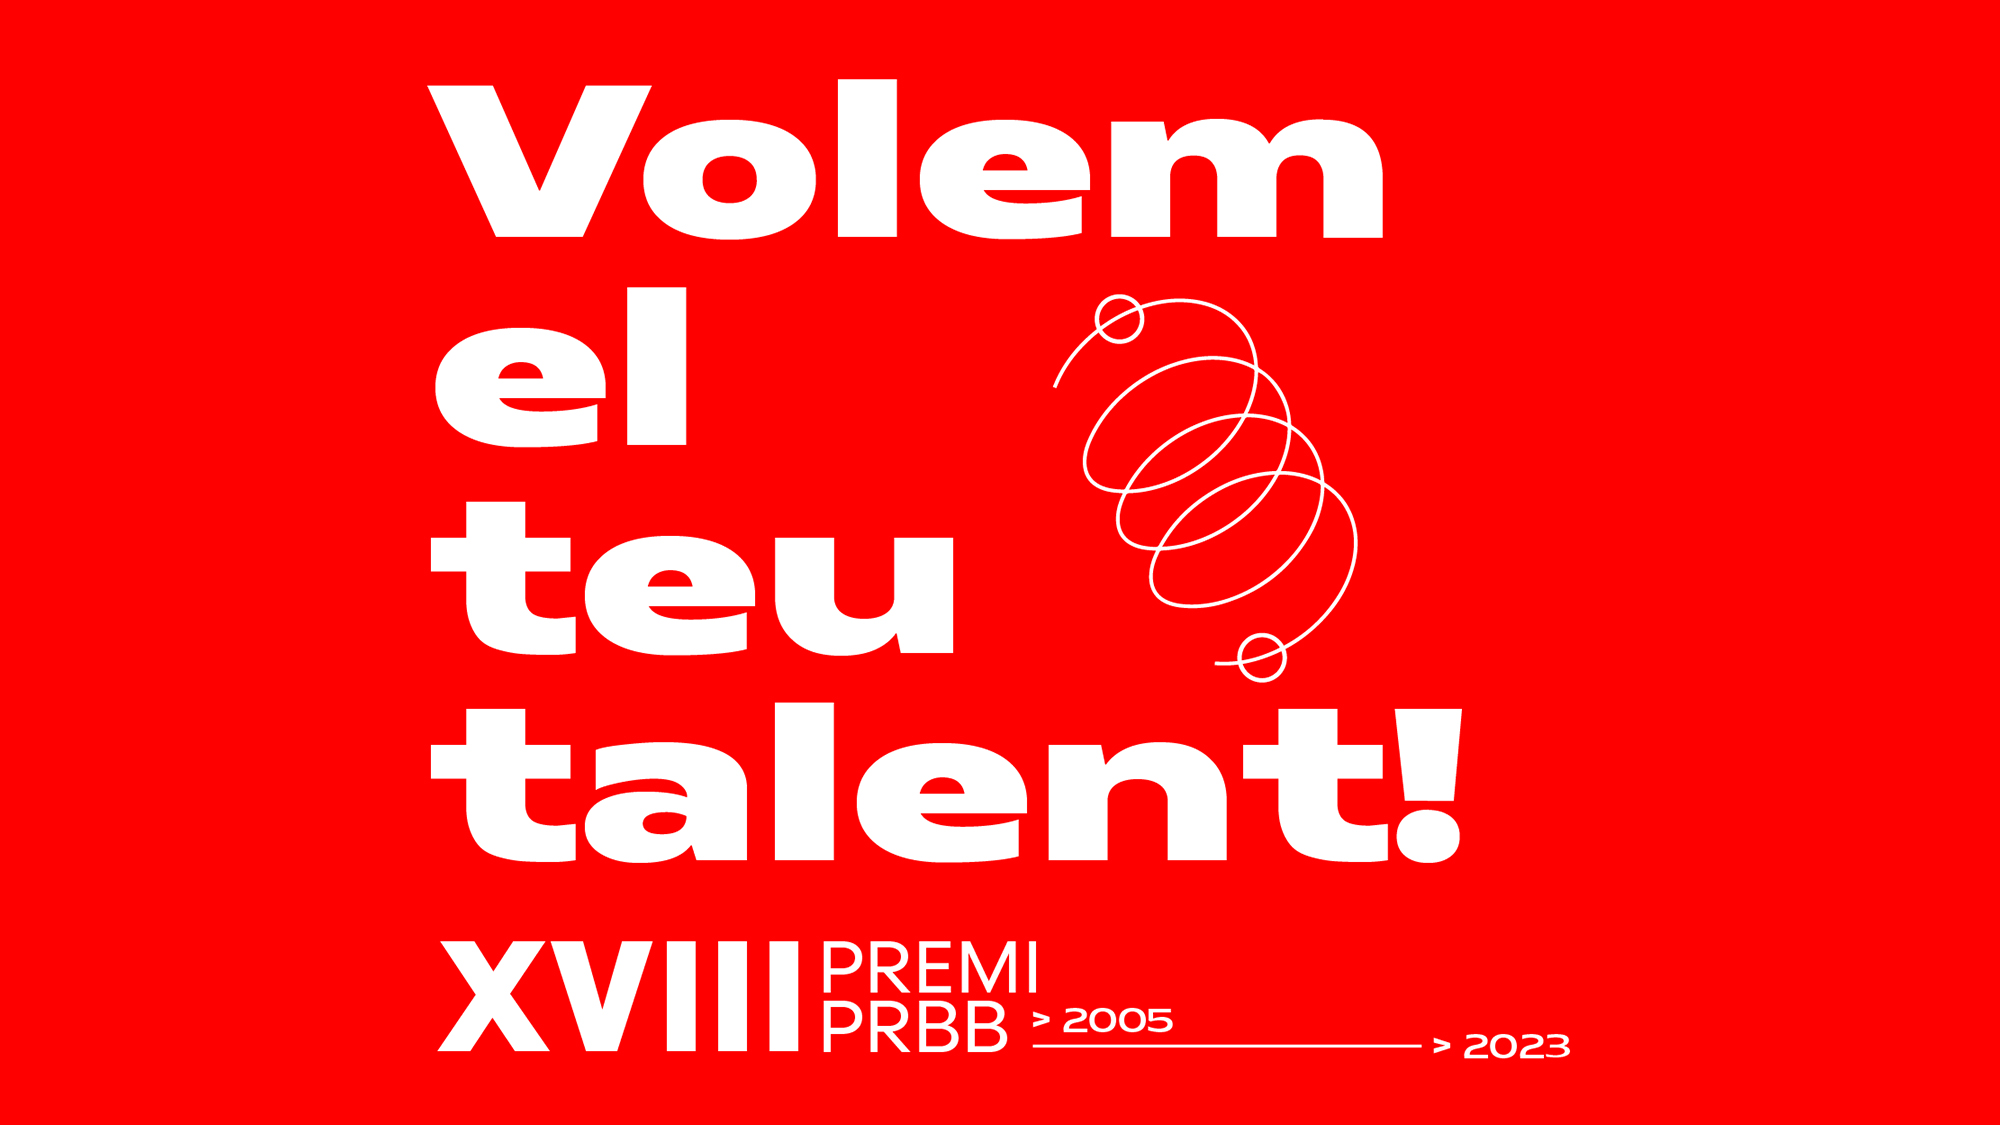 Disseny amb lletres que diuen 'Volem el teu talent' per anunciar la 18 edició del premi PRBB